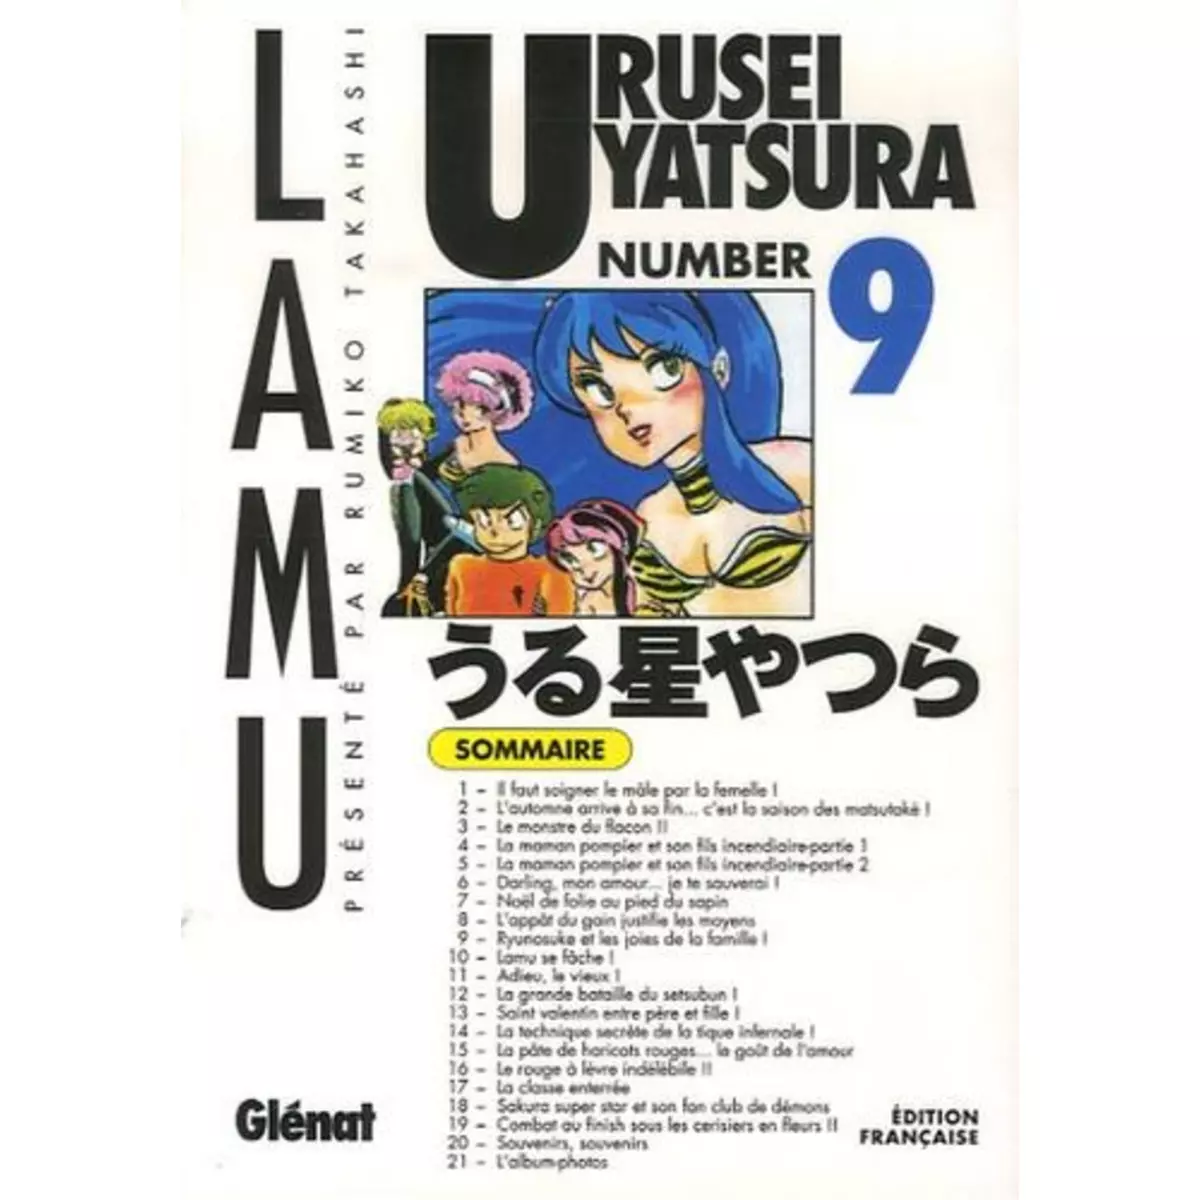  URUSEI YATSURA TOME 9, Takahashi Rumiko